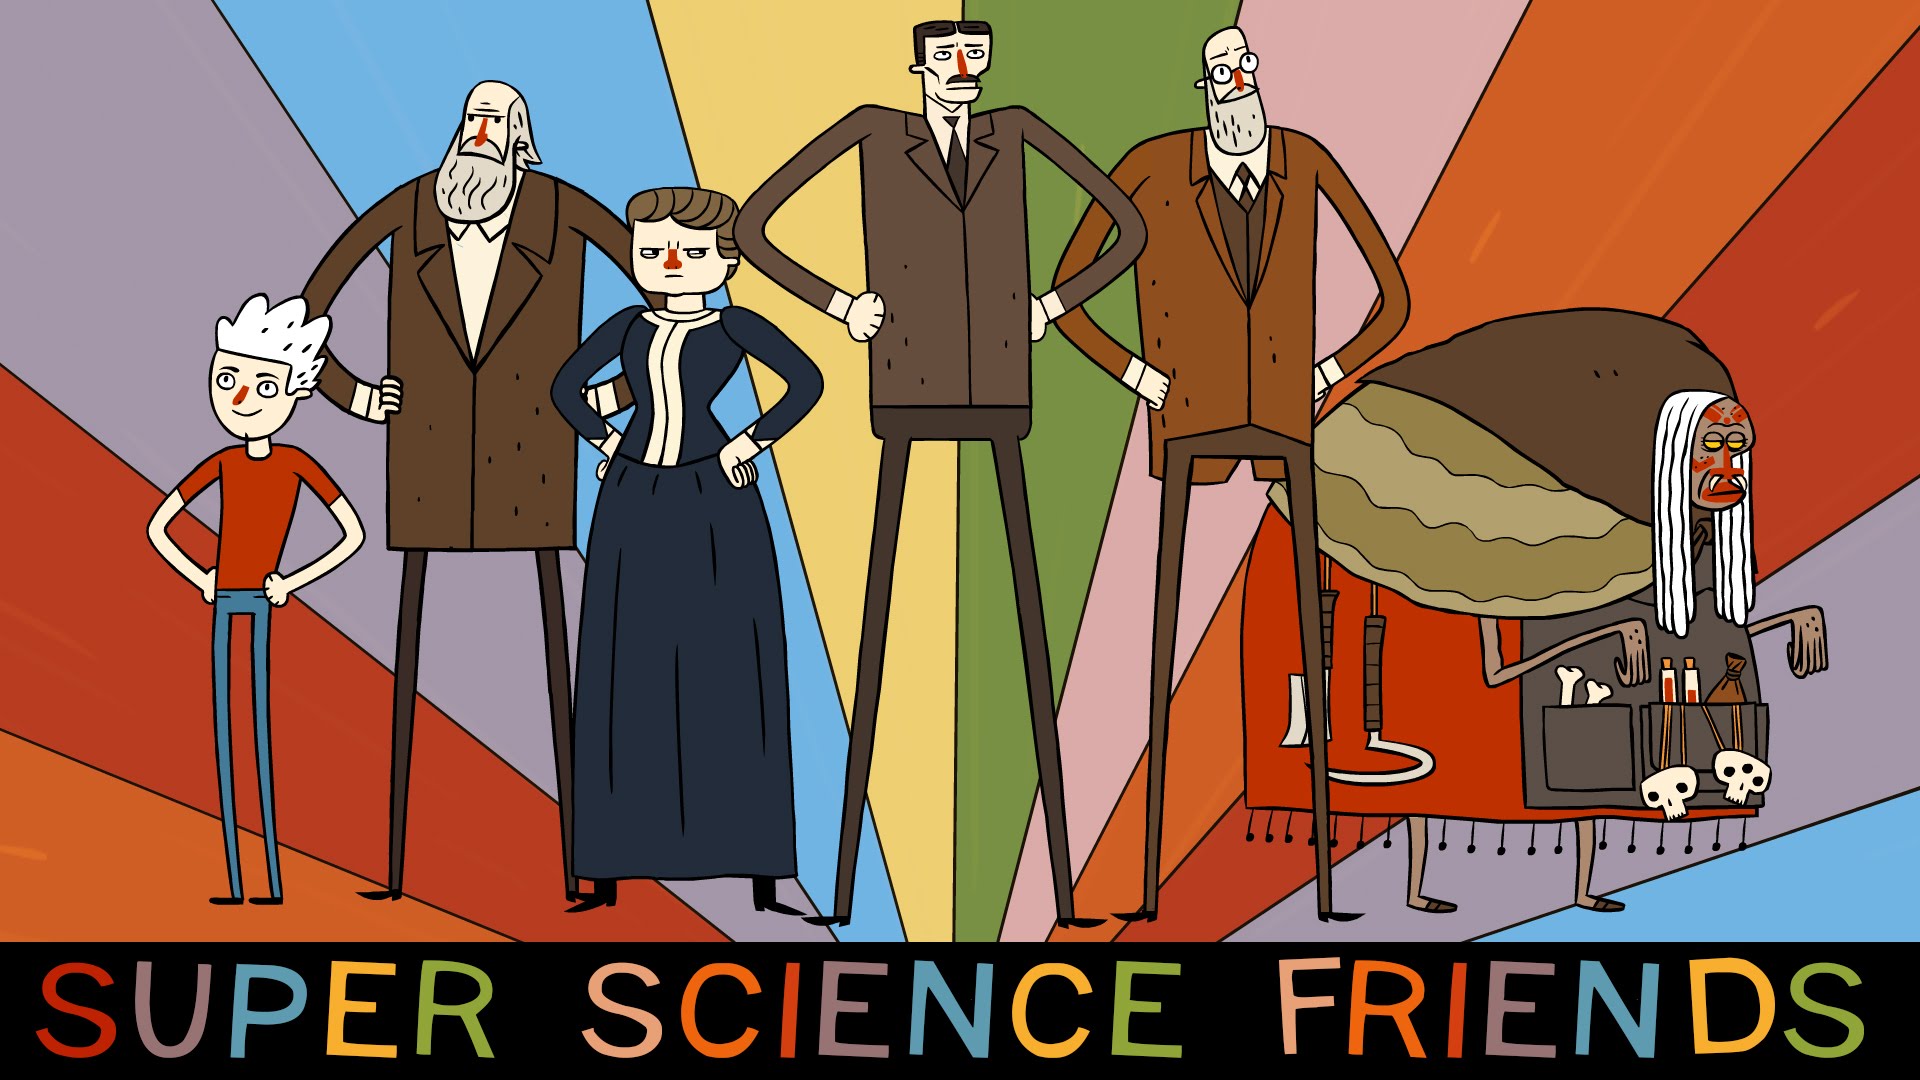 Super Science Friends, o grupos de cientistas super-heróis viajantes do tempo